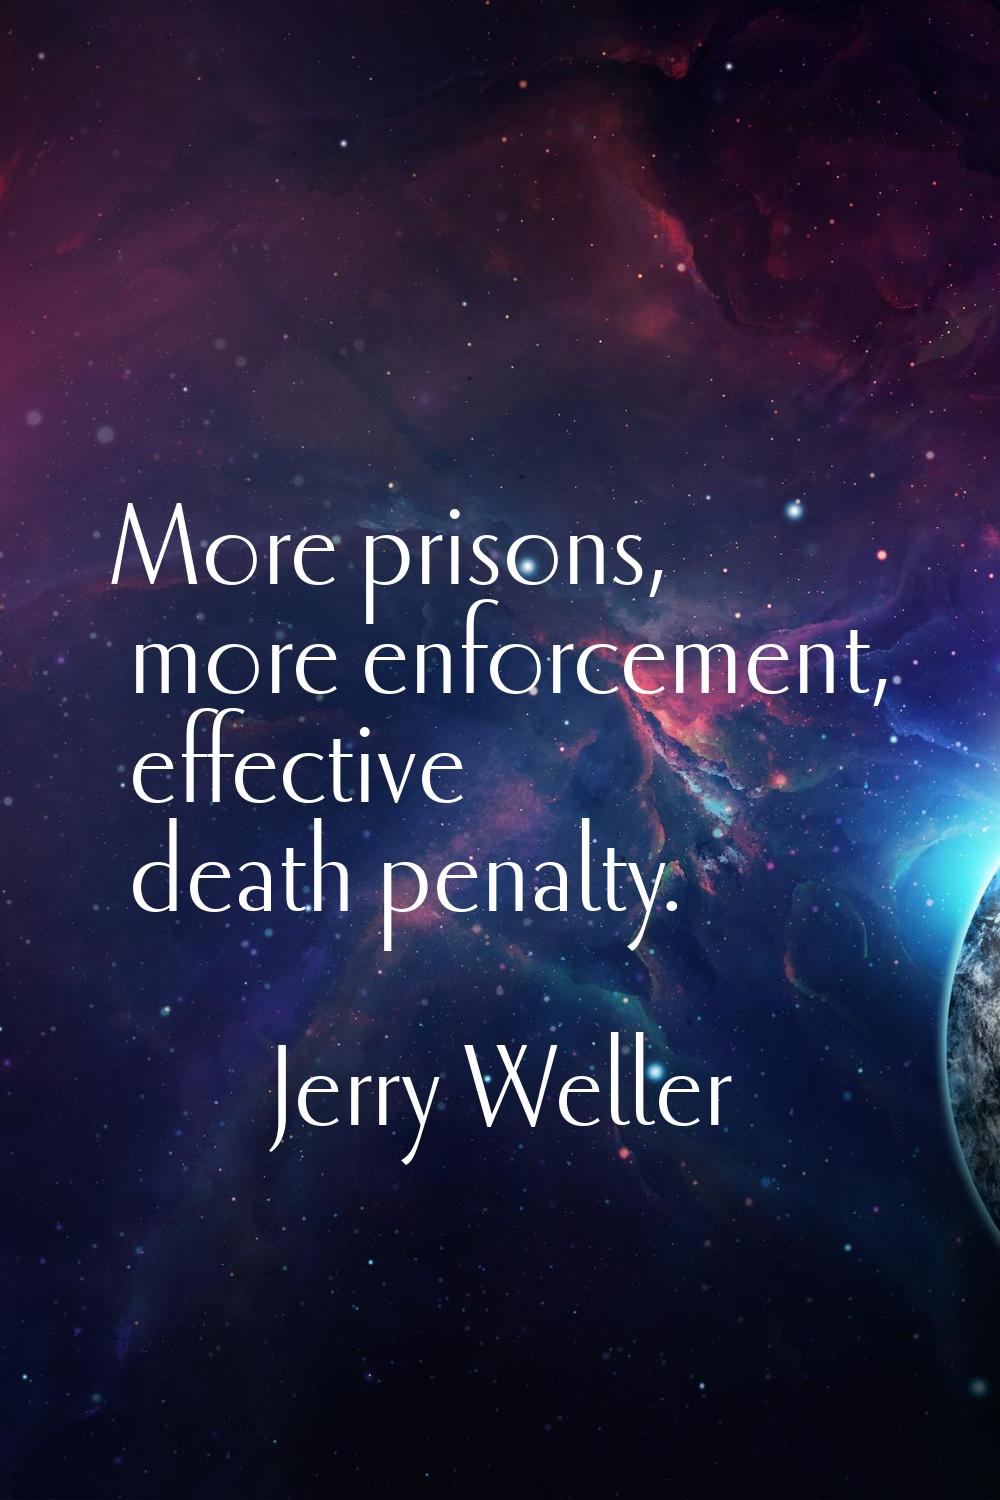 More prisons, more enforcement, effective death penalty.